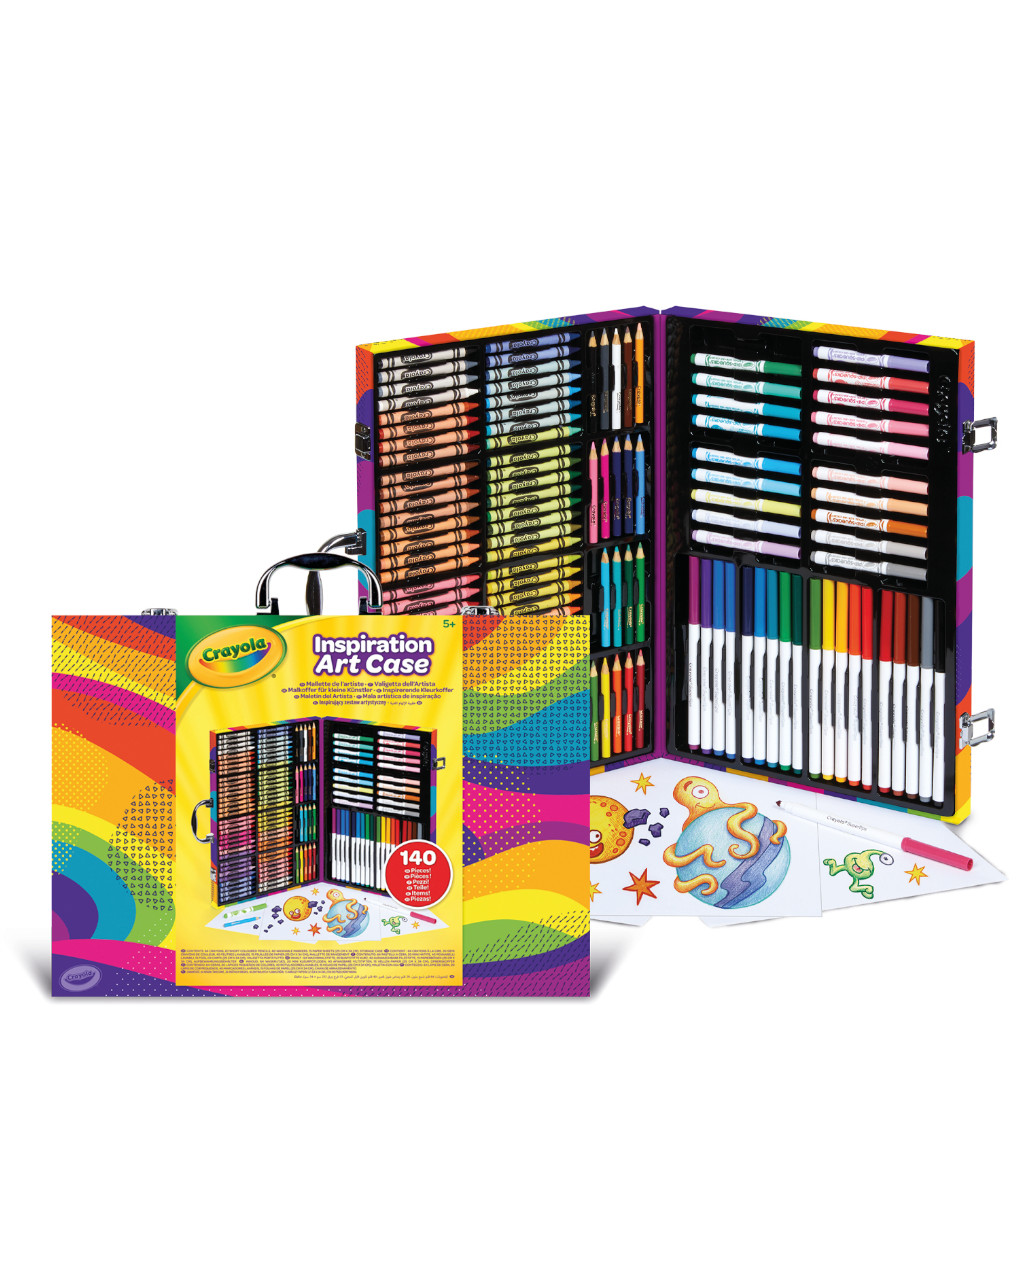 Valigetta arcobaleno 140 pezzi con pennarelli pastelli e matite colorate - crayola - Crayola